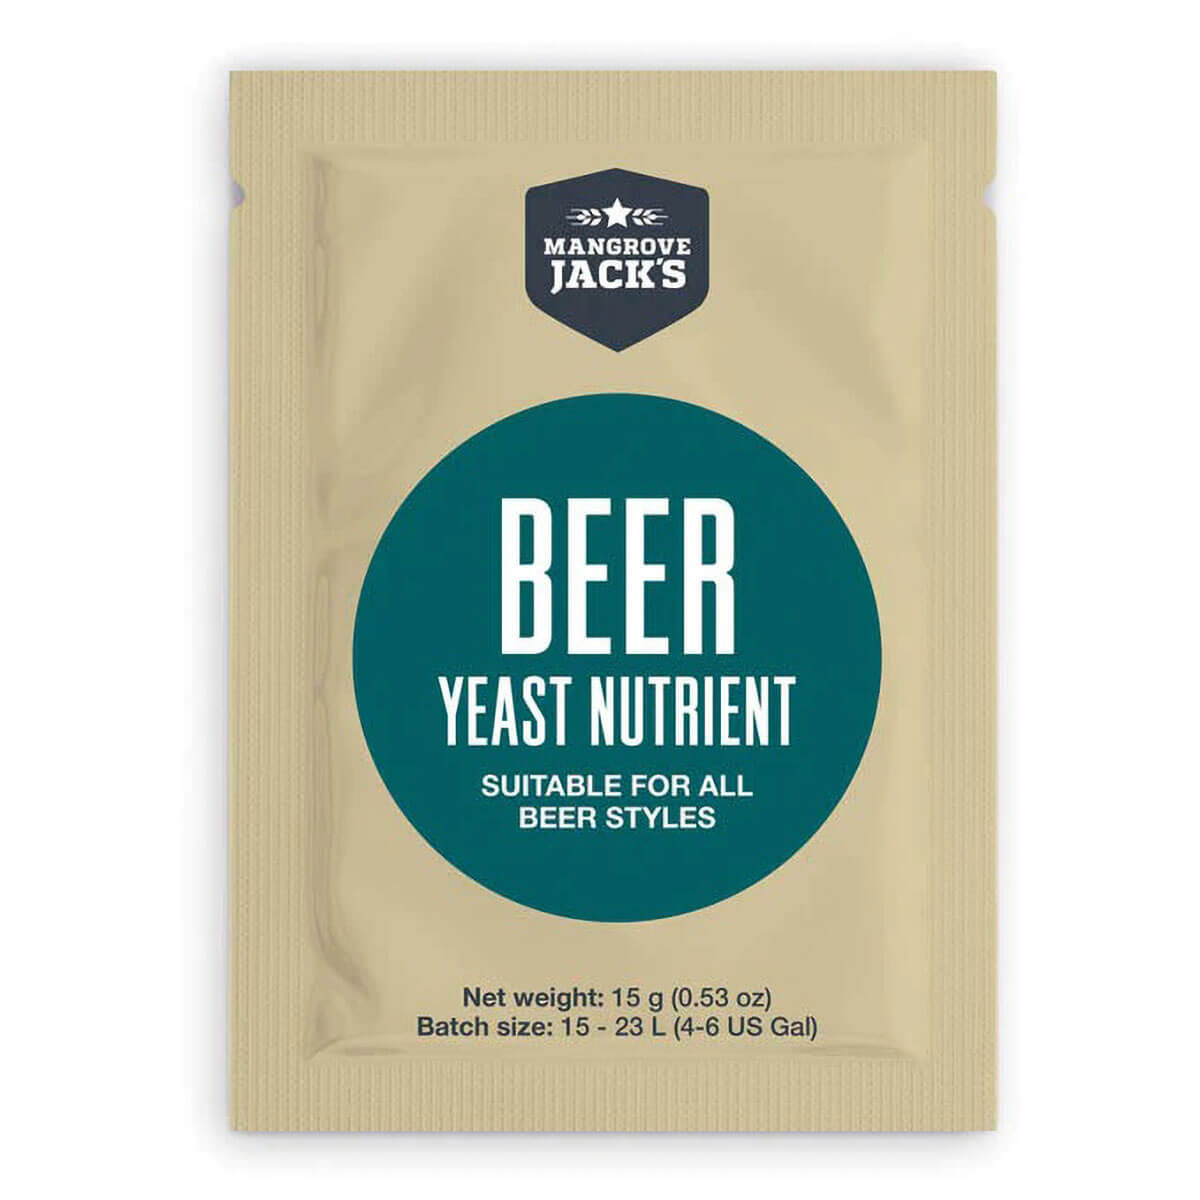 Beer Yeast Nutrient - 15g - Mangrove Jack's